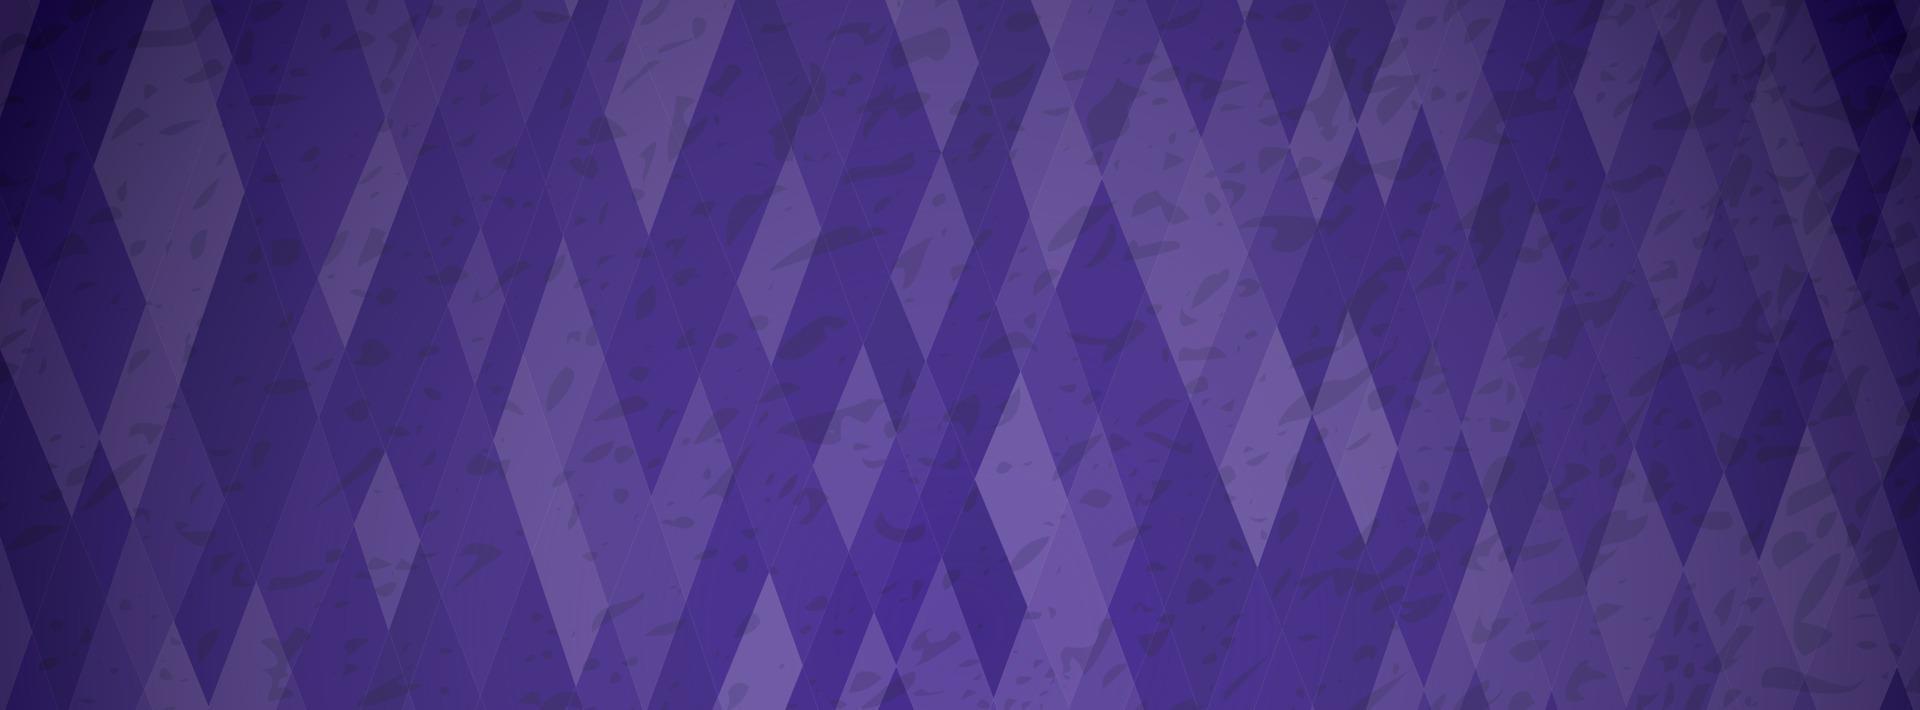 abstrakter strukturierter Hintergrund mit lila bunten Rechtecken. Banner-Design. schönes futuristisches dynamisches geometrisches Musterdesign. Vektor-Illustration vektor